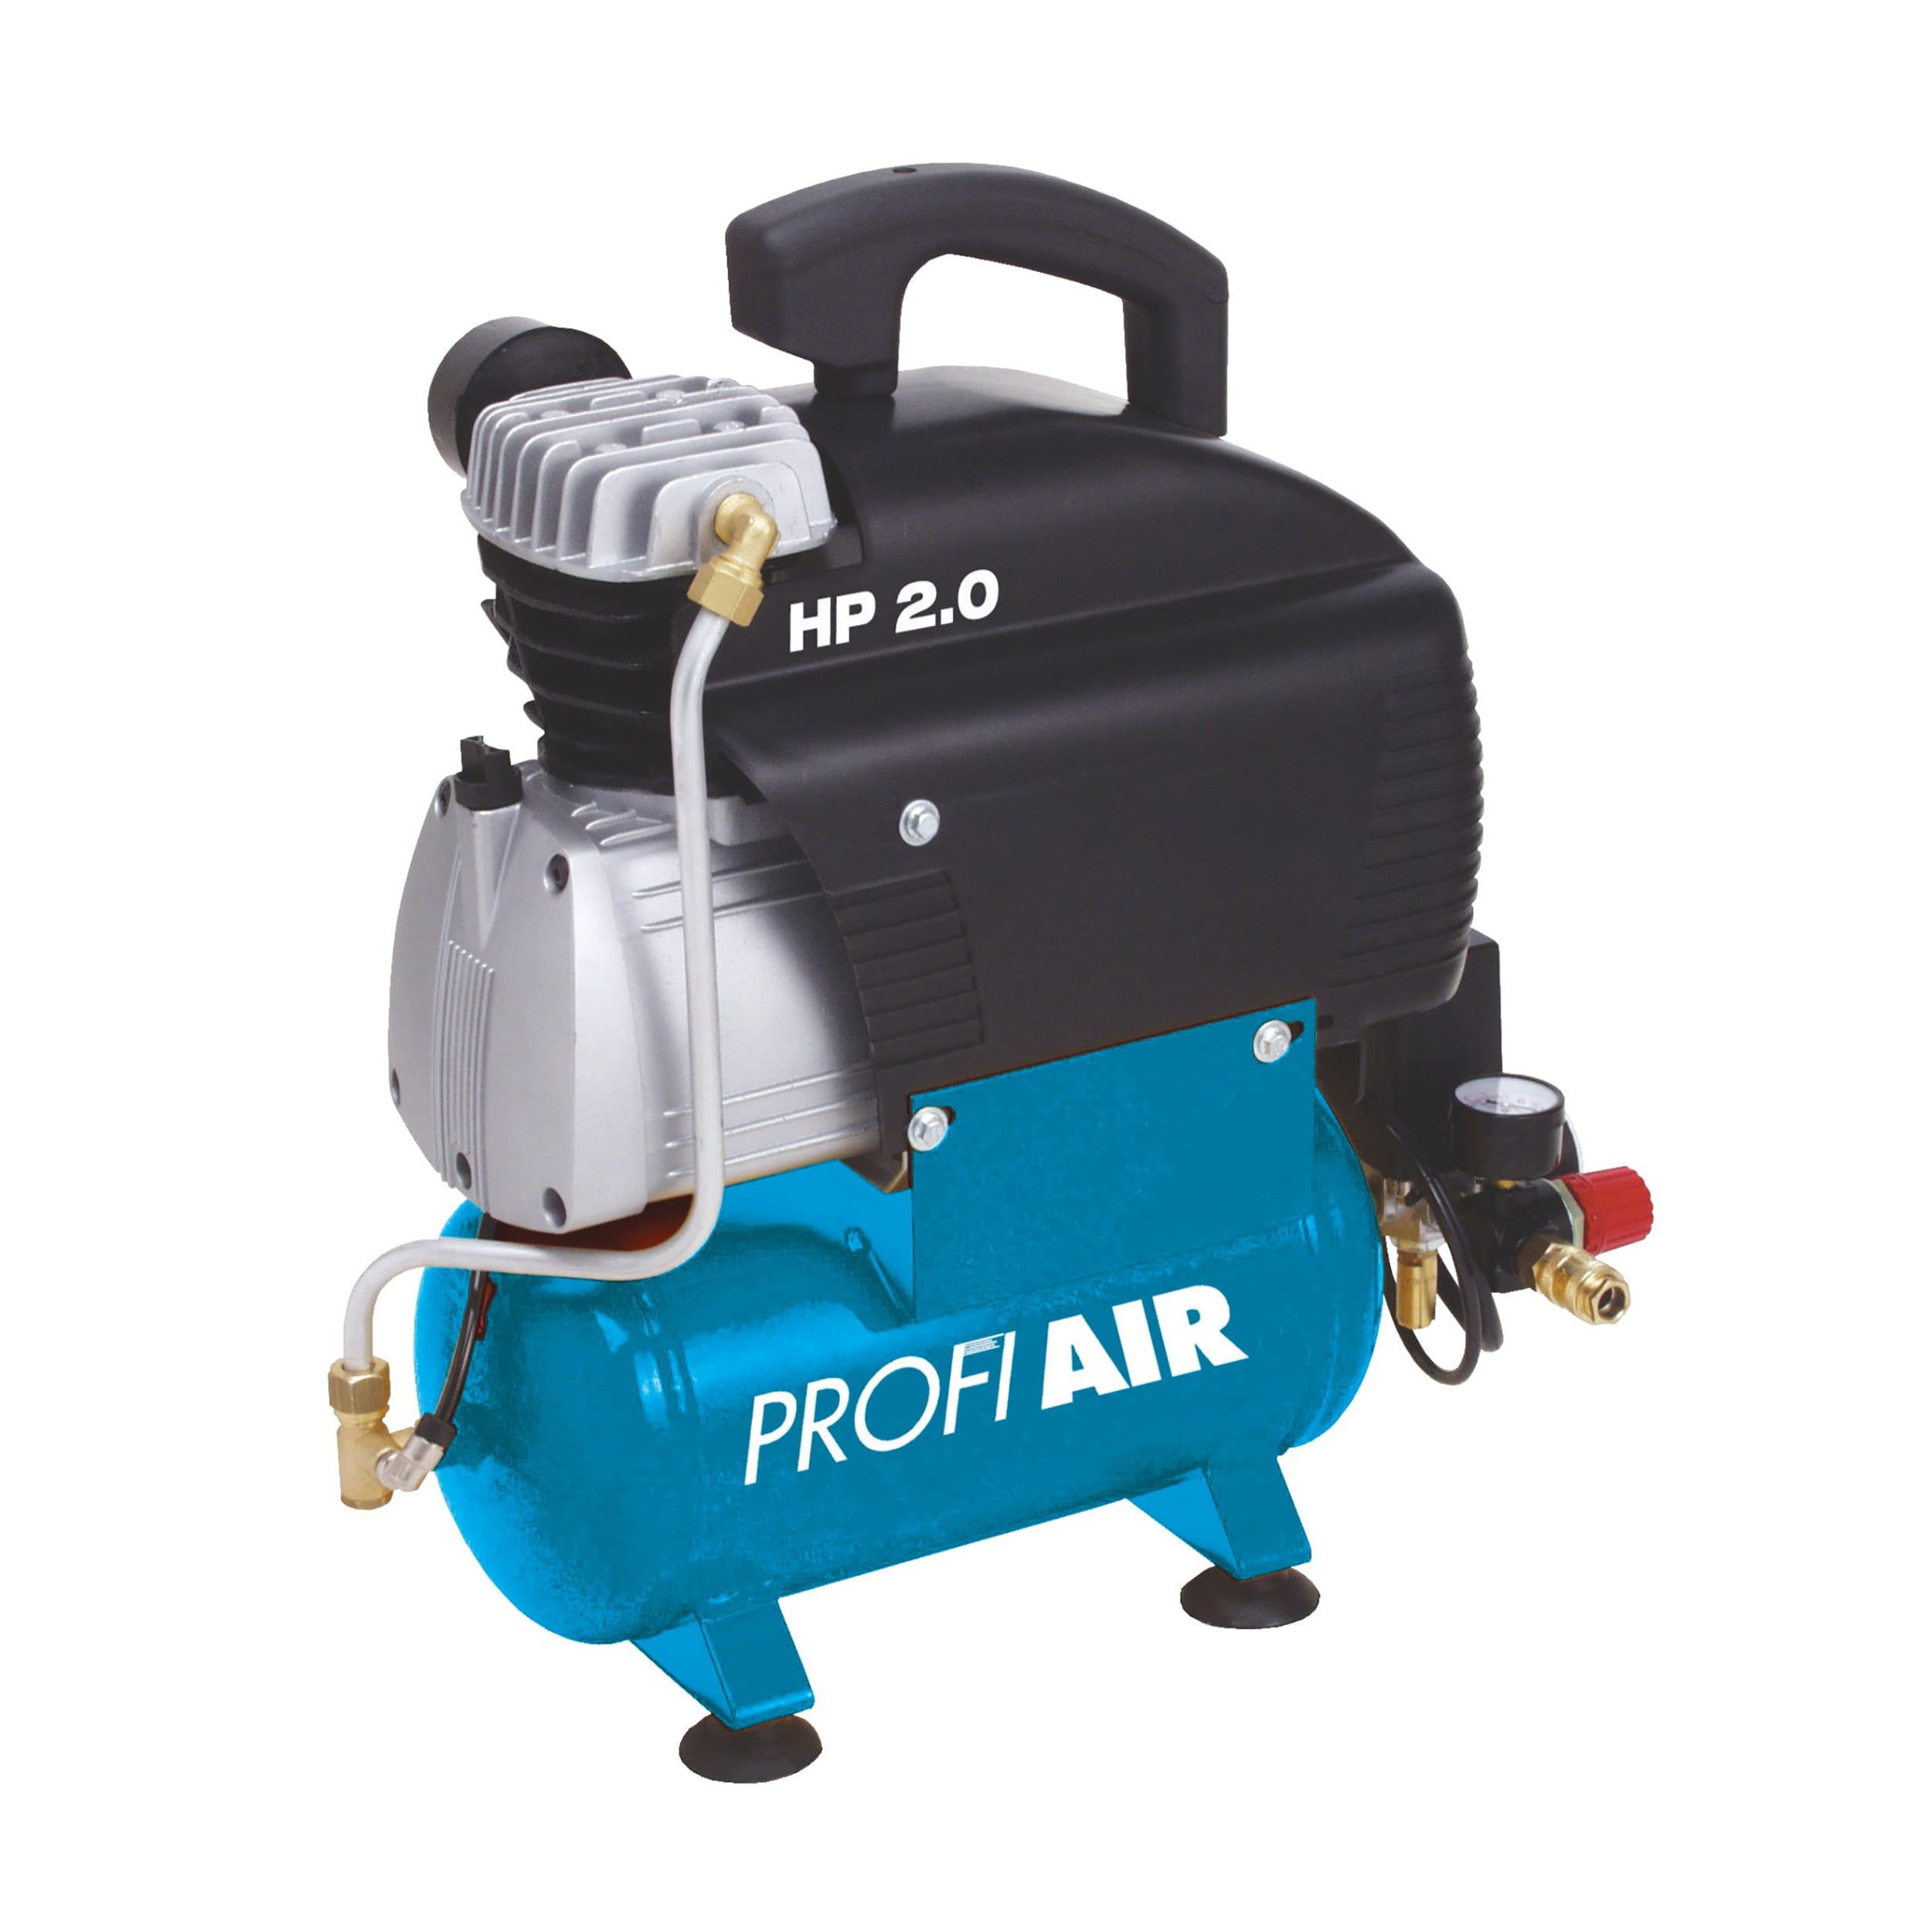 Profi Air kompresor za vazduh zrak 250/8/6 6L - masineialati.ba -  Profesionalni i hobi alati i mašine